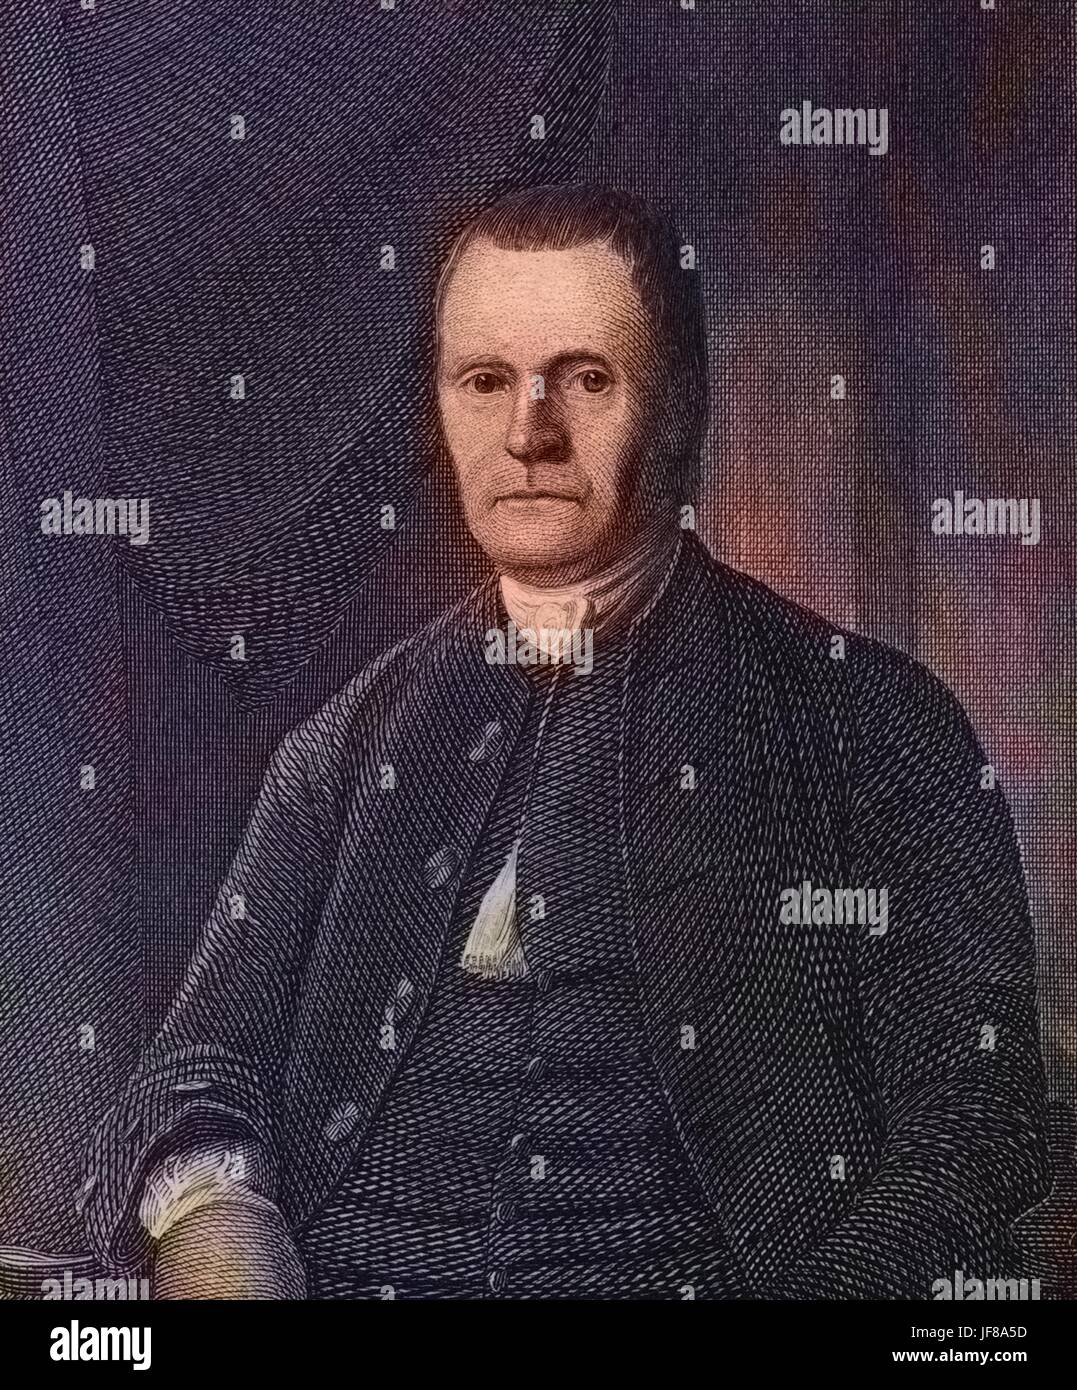 Porträt von Roger Sherman, Gründervater der Vereinigten Staaten und Verfasser der Unabhängigkeitserklärung, 1775. Hinweis: Bild wurde digital eingefärbt wurde mit einem modernen Verfahren. Farben können Zeit ungenau sein. Stockfoto